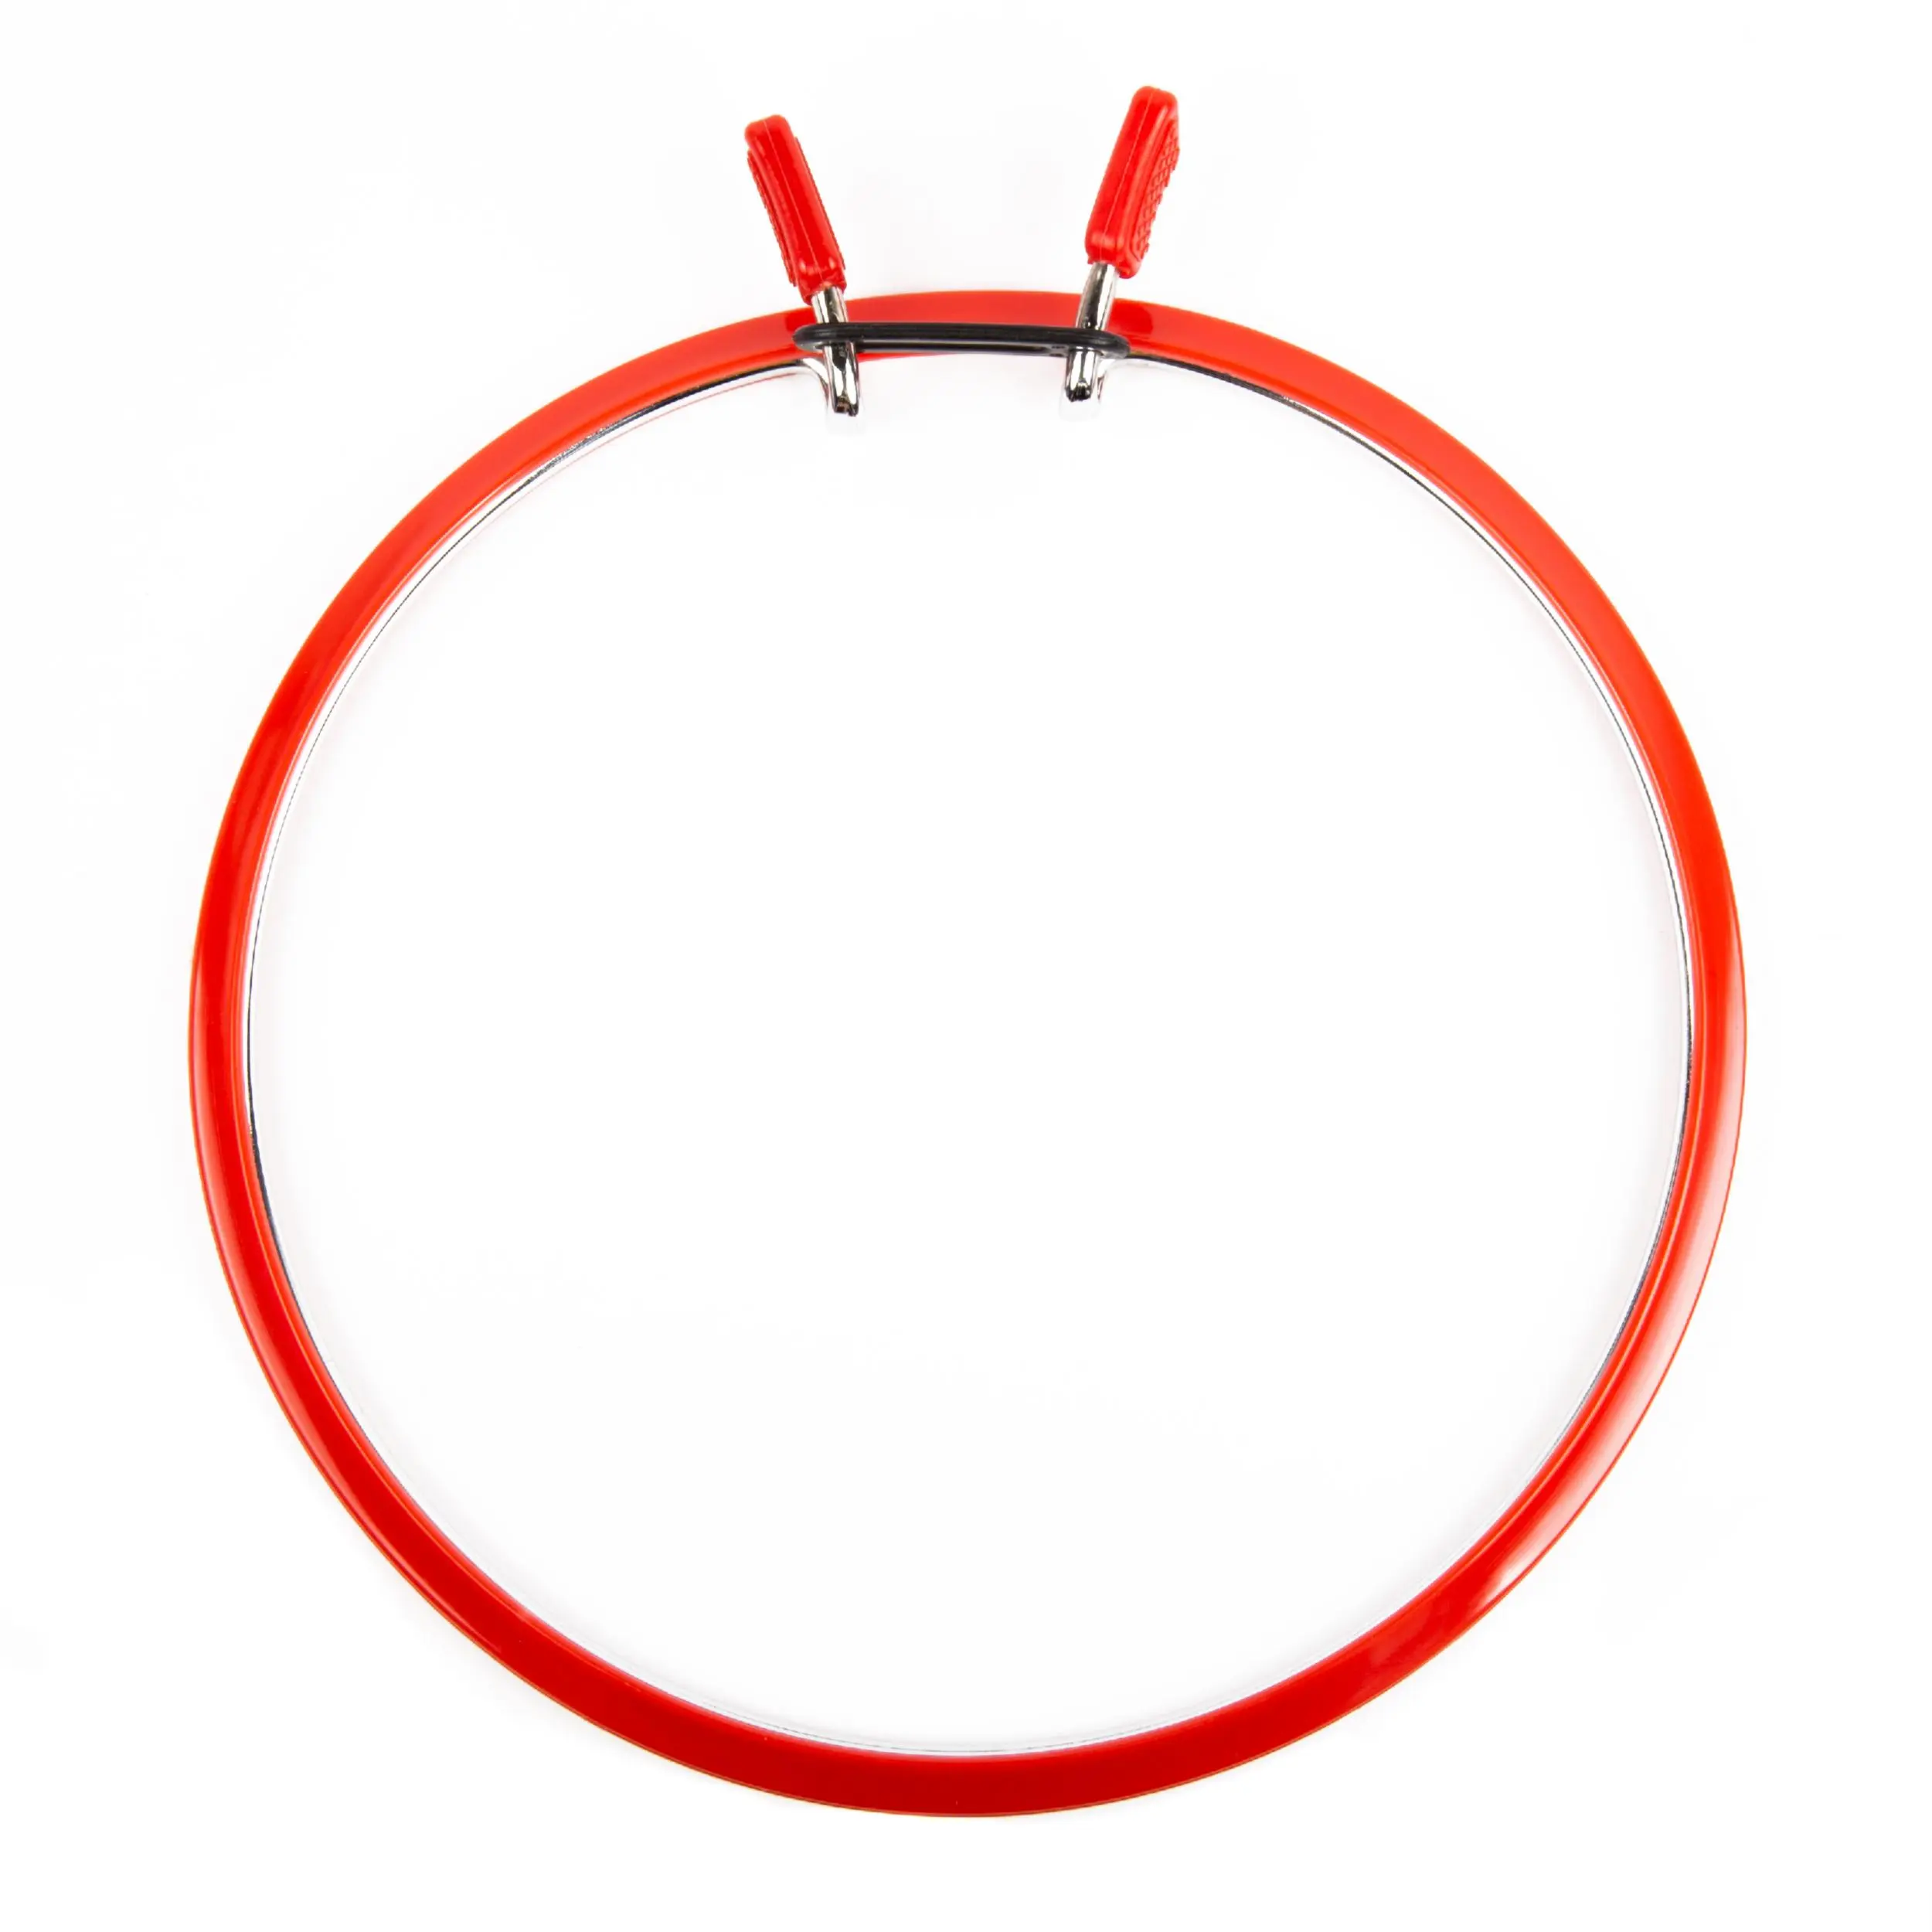 160-1/червоні Пяльці Nurge пружинні для вишивання та штопки, висота обідка 7мм, діаметр 195мм